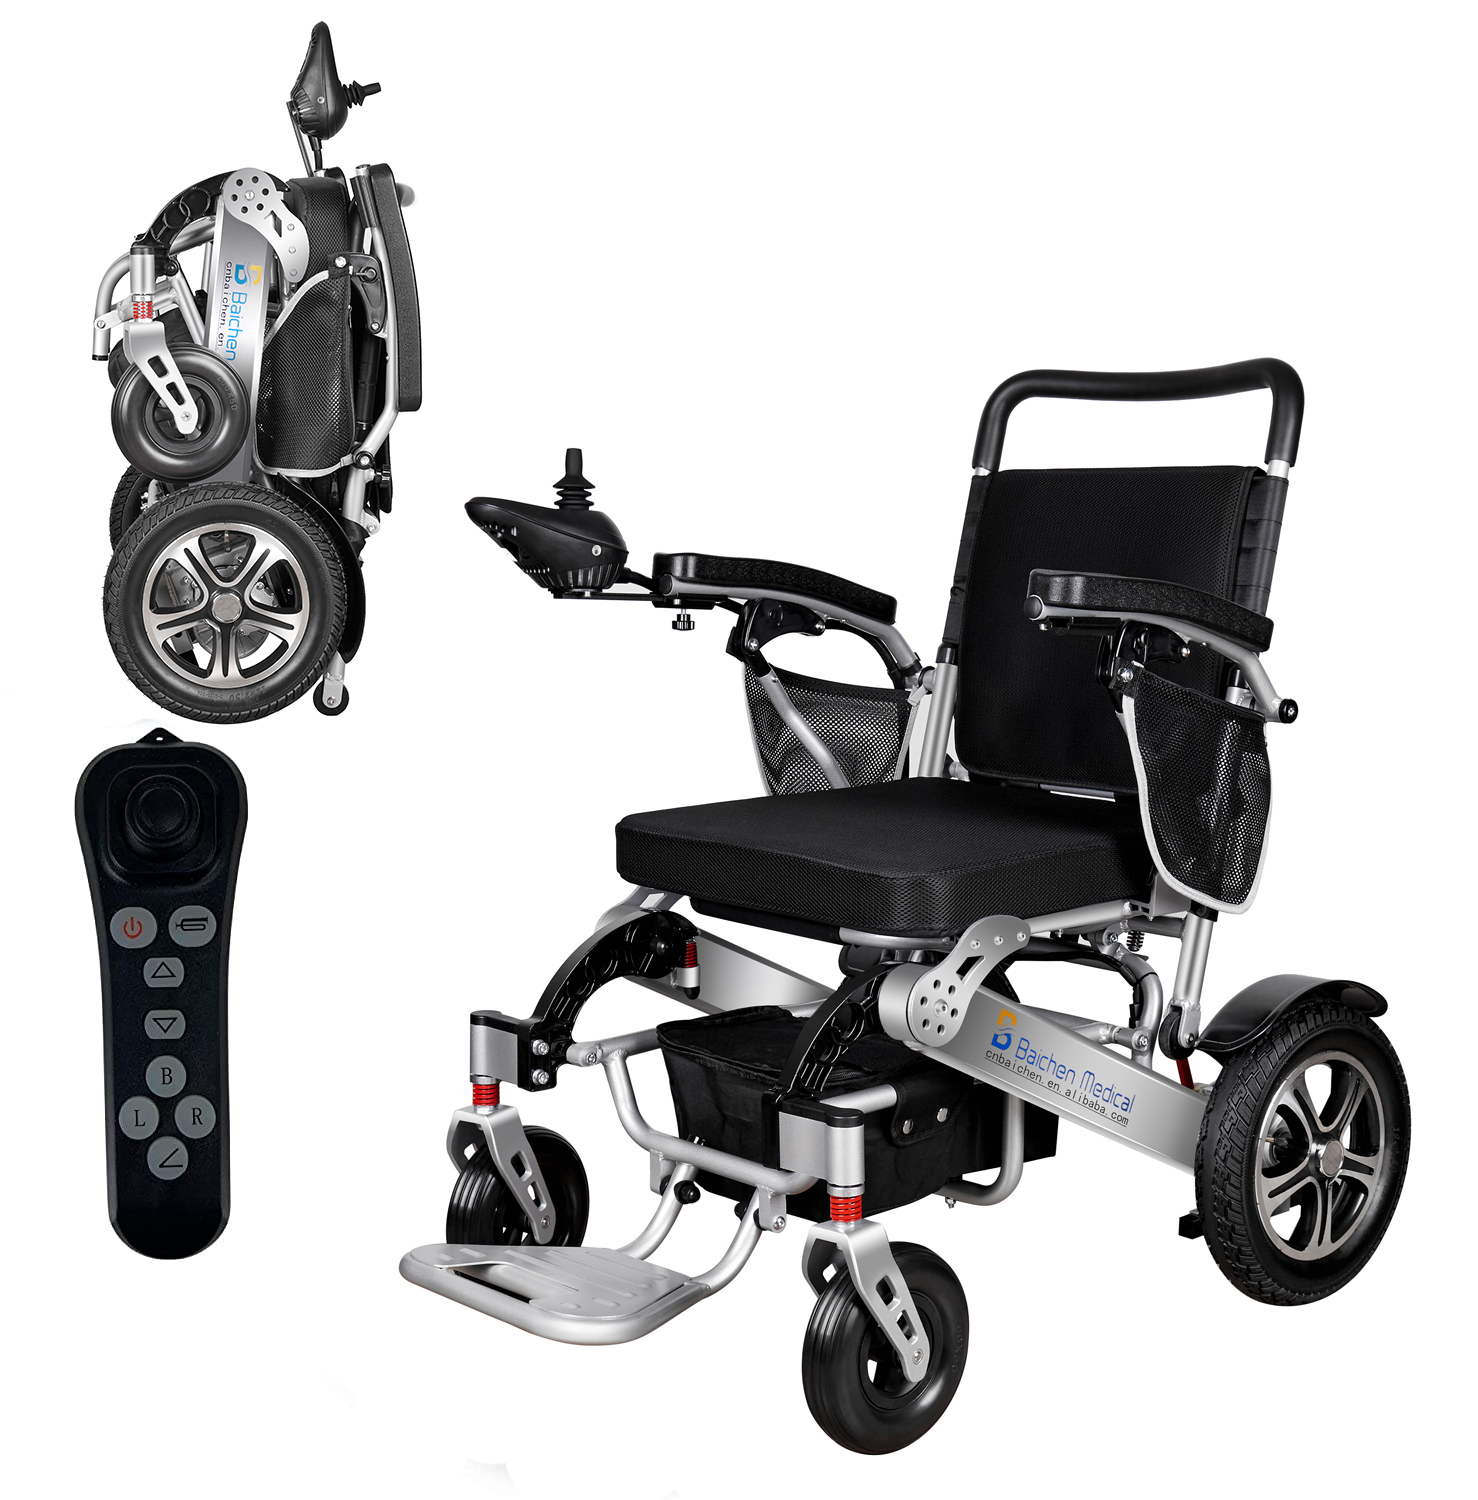 Silla de ruedas manual plegable, ligera, económica y de aleación de aluminio para personas con discapacidad Imagen destacada